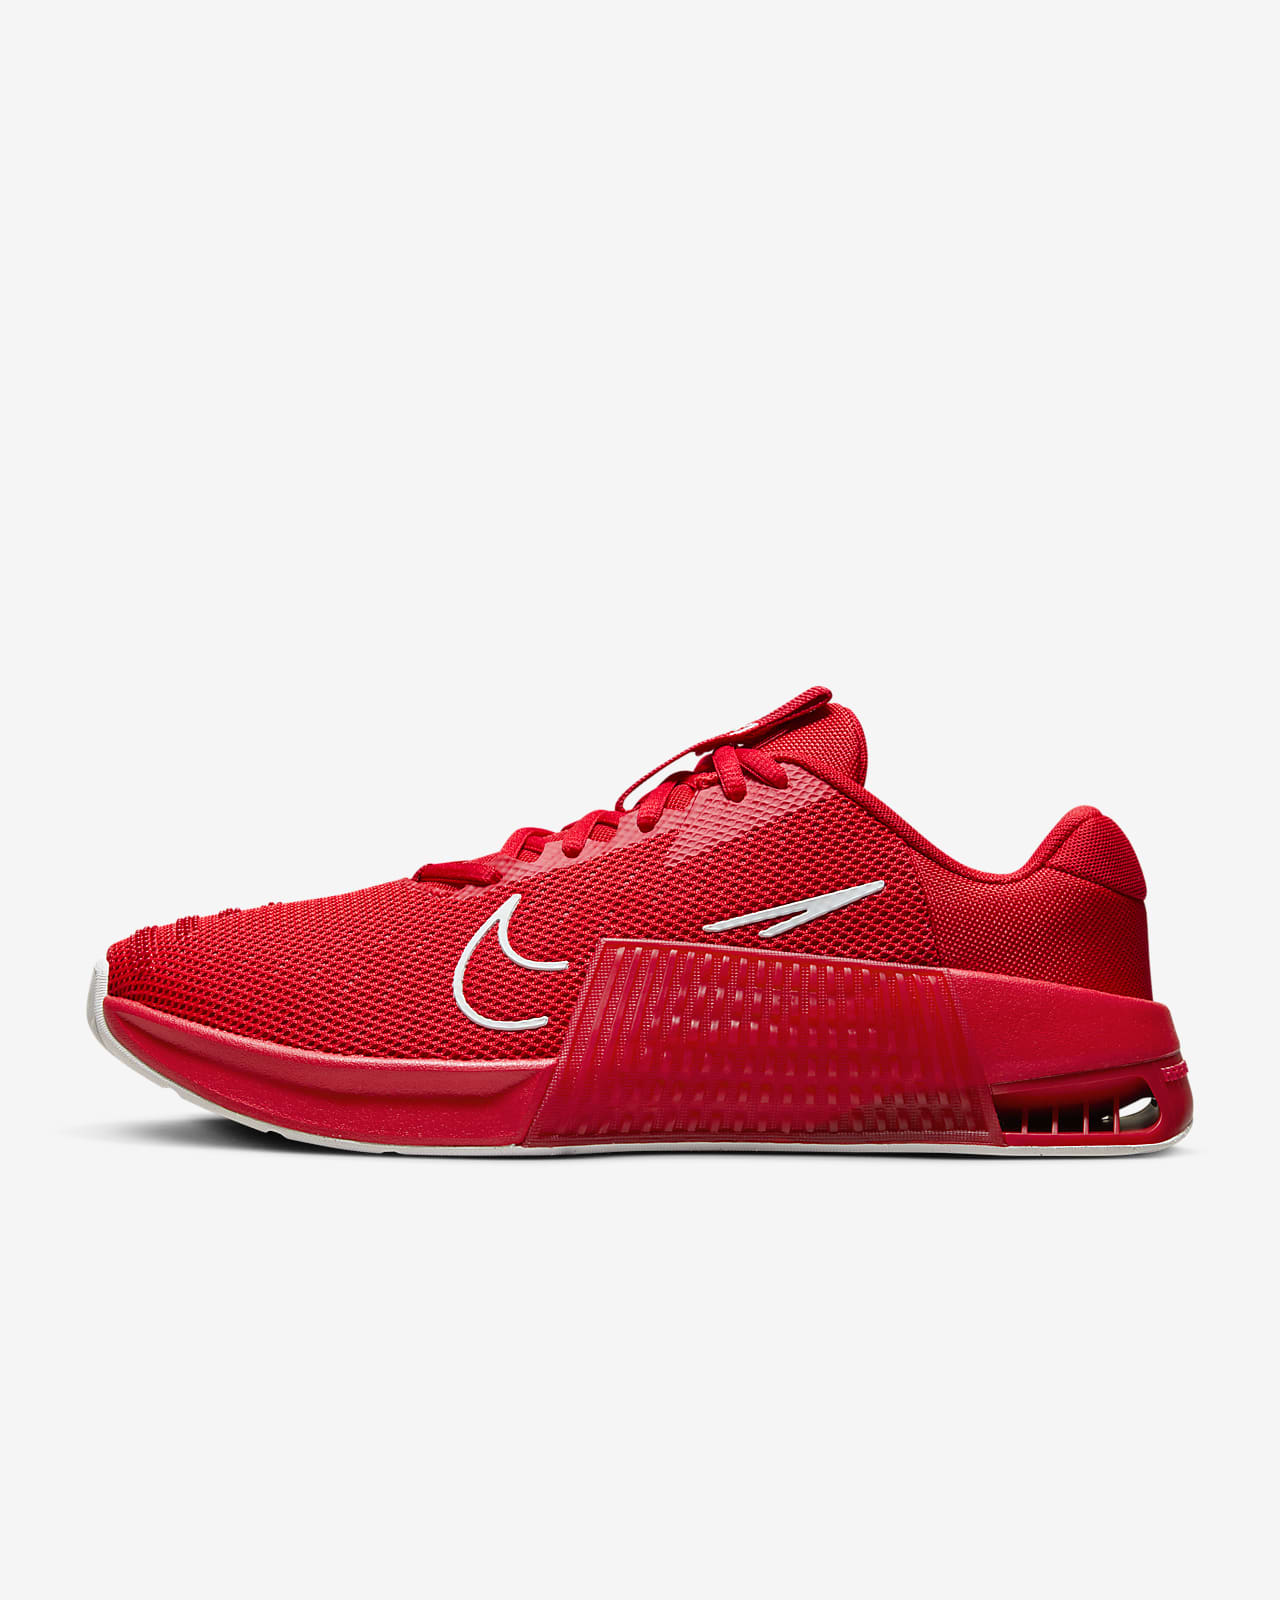 Precios de Nike Metcon 9 AMP hombre - Ofertas para comprar online